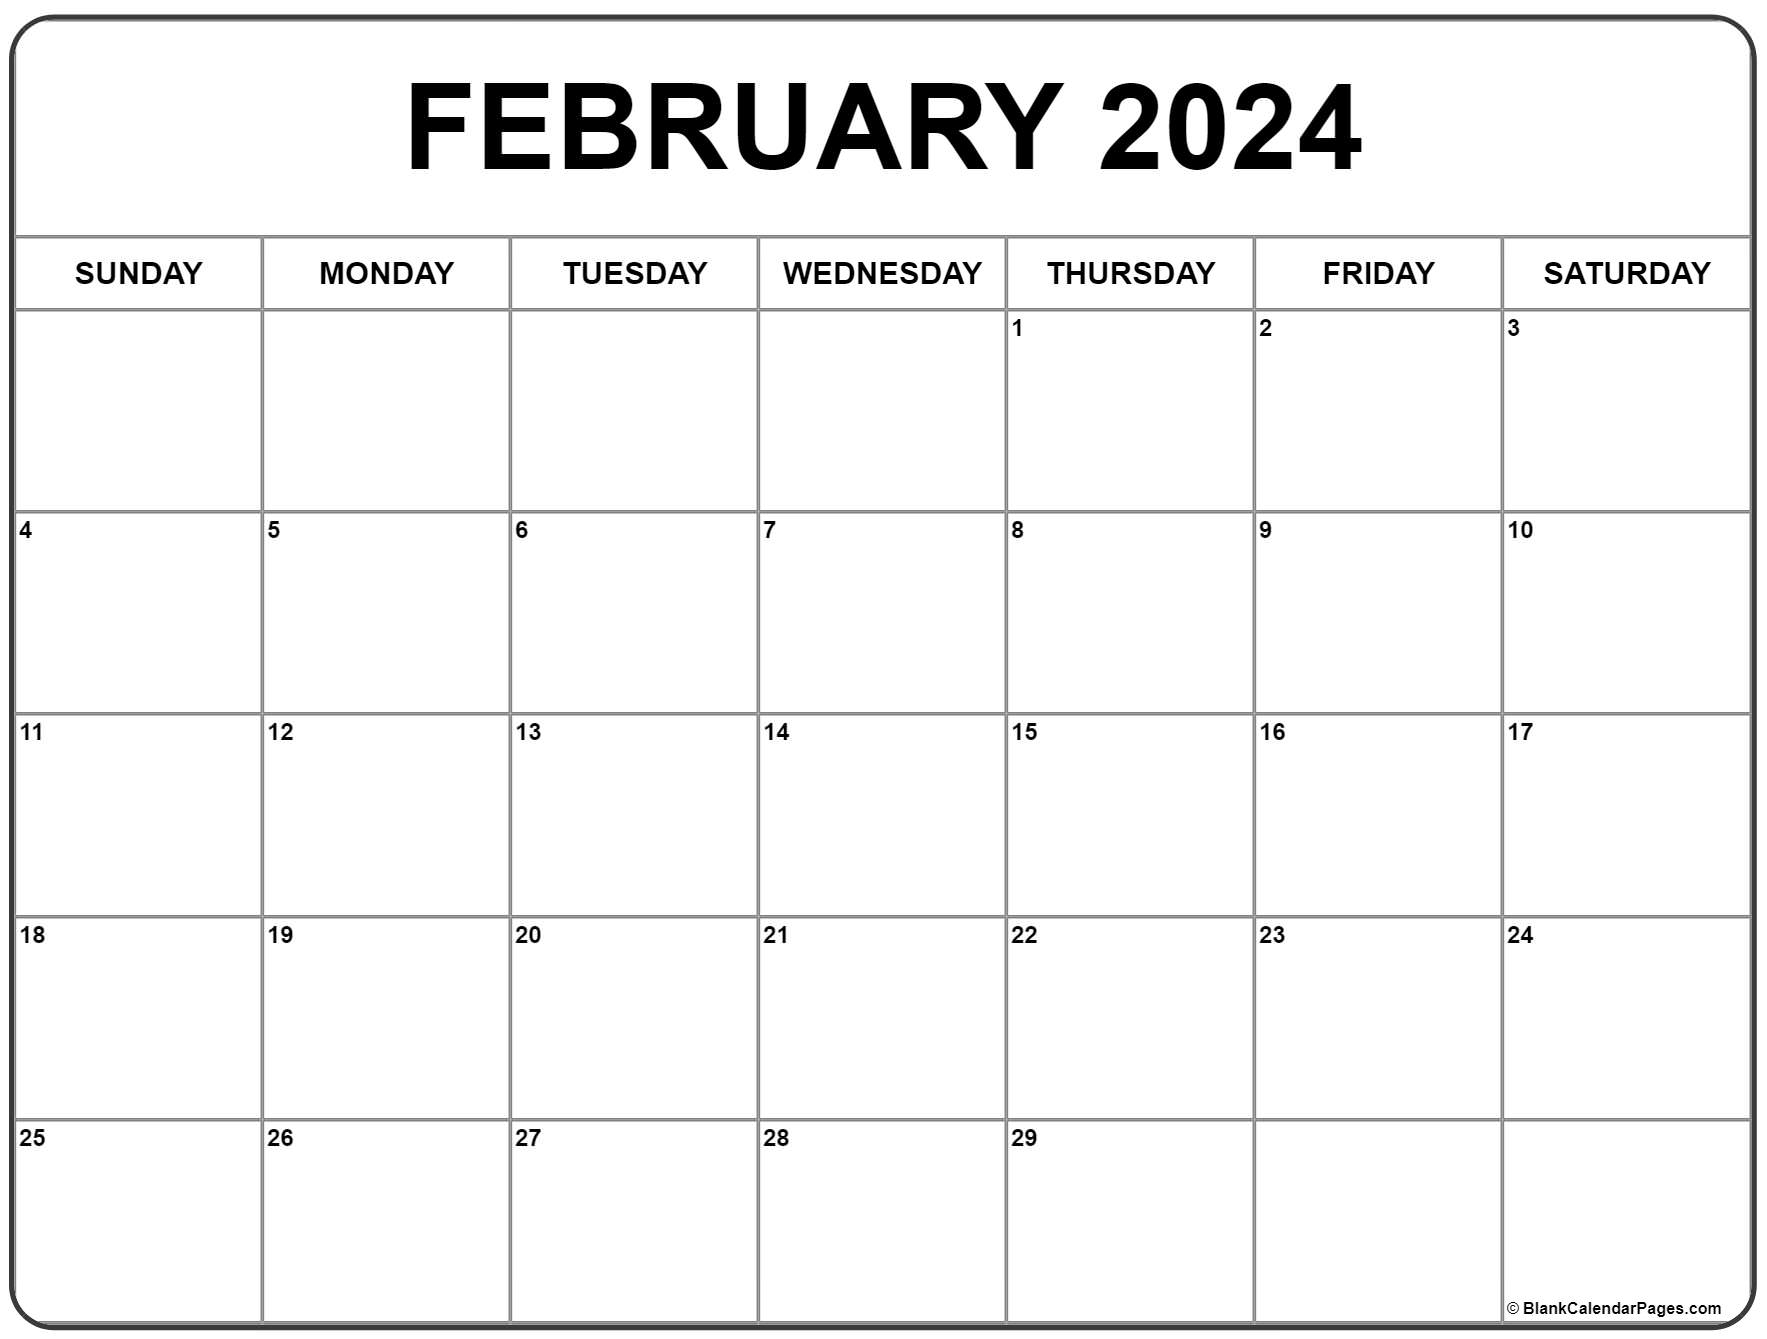 February 2024 Calendar | Free Printable Calendar for 2024 February Calendar Free Printable